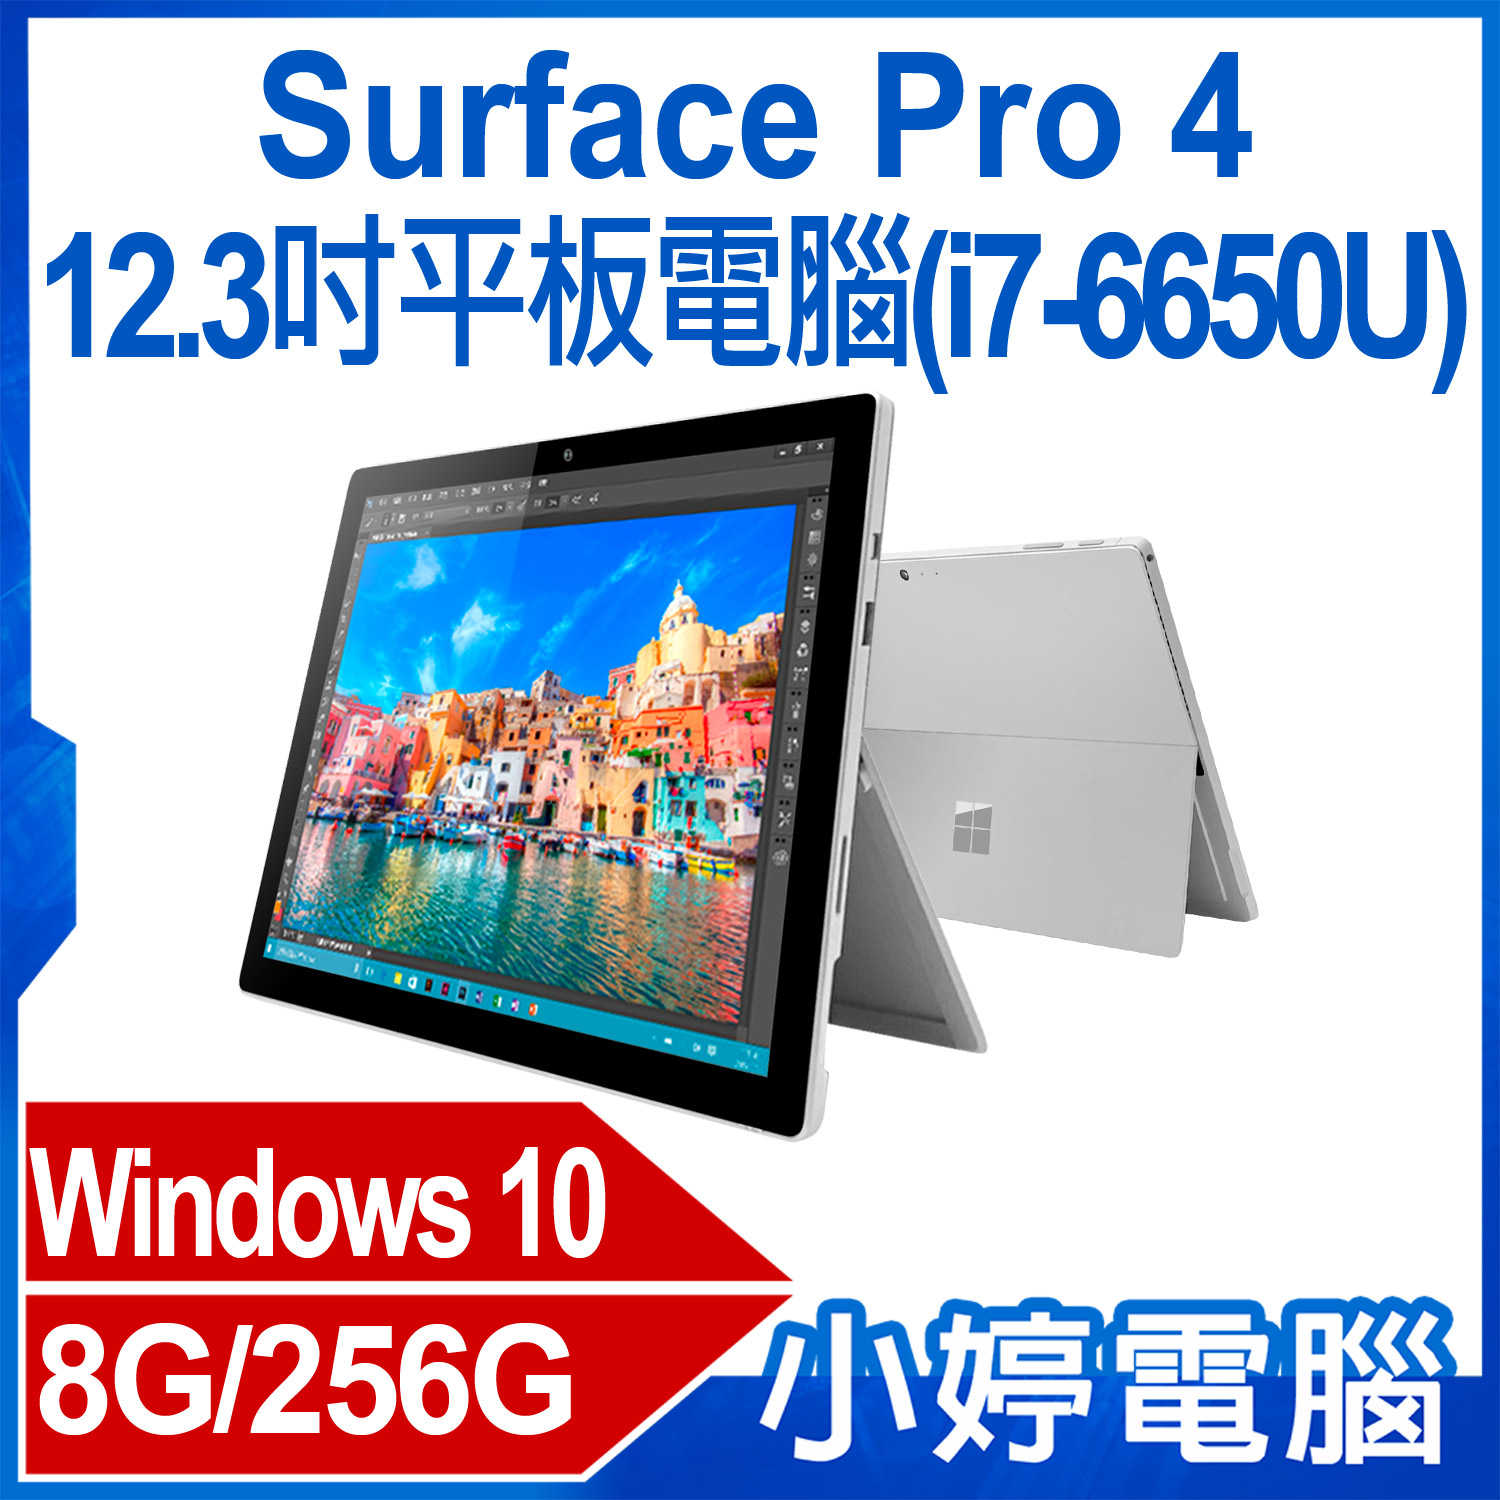 【小婷電腦】福利品 Surface Pro 4 (i7-6650U)12.3吋平板電腦 Intel處理器 Windows